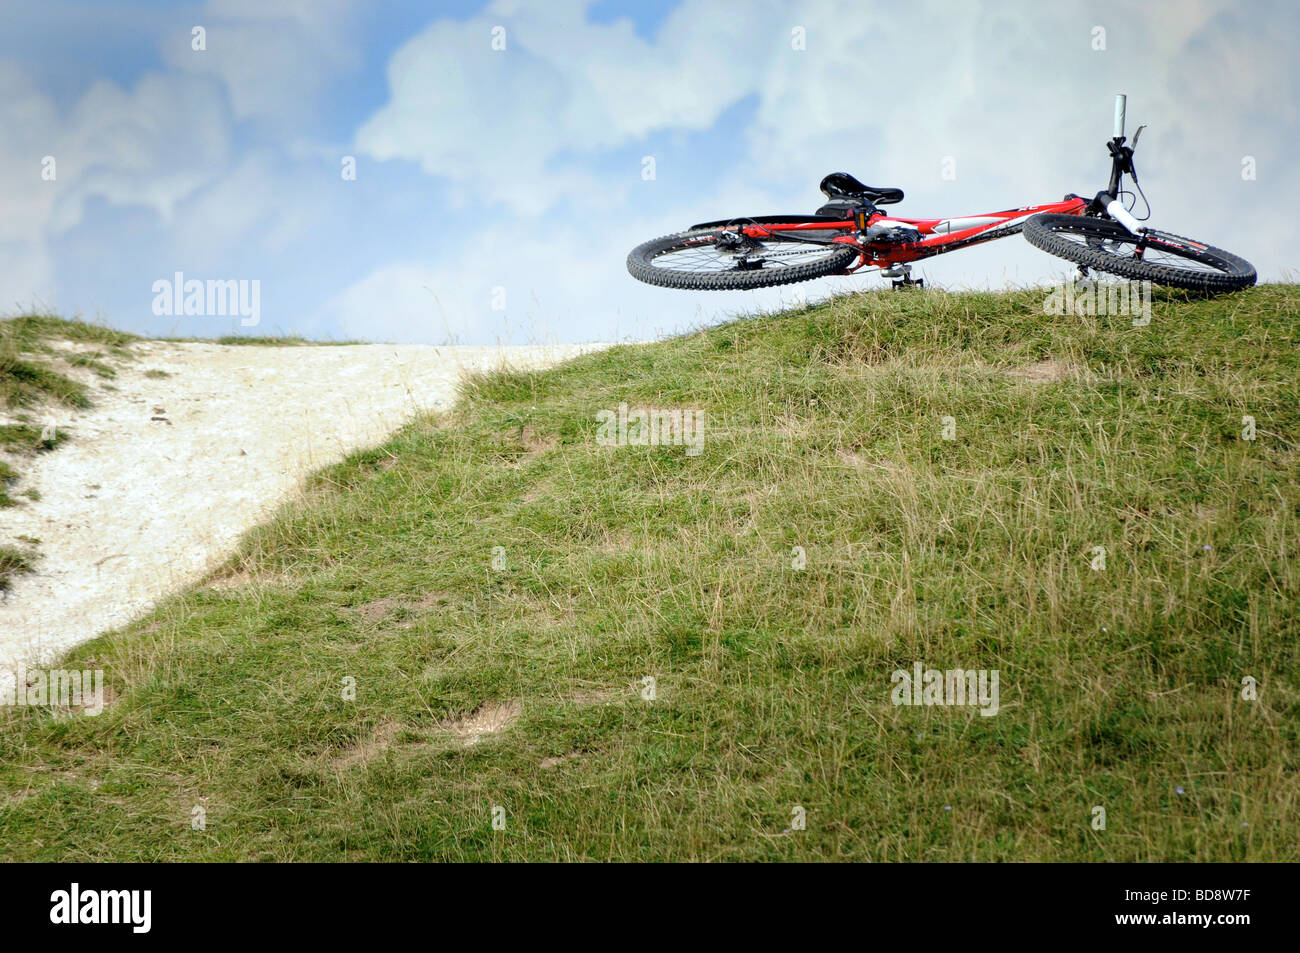 Lizenzfreie kostenlose Foto eines Mountainbikes Verlegung auf dem Rasen nach dem Fahrer in der britischen Landschaft UK abgefallen ist Stockfoto